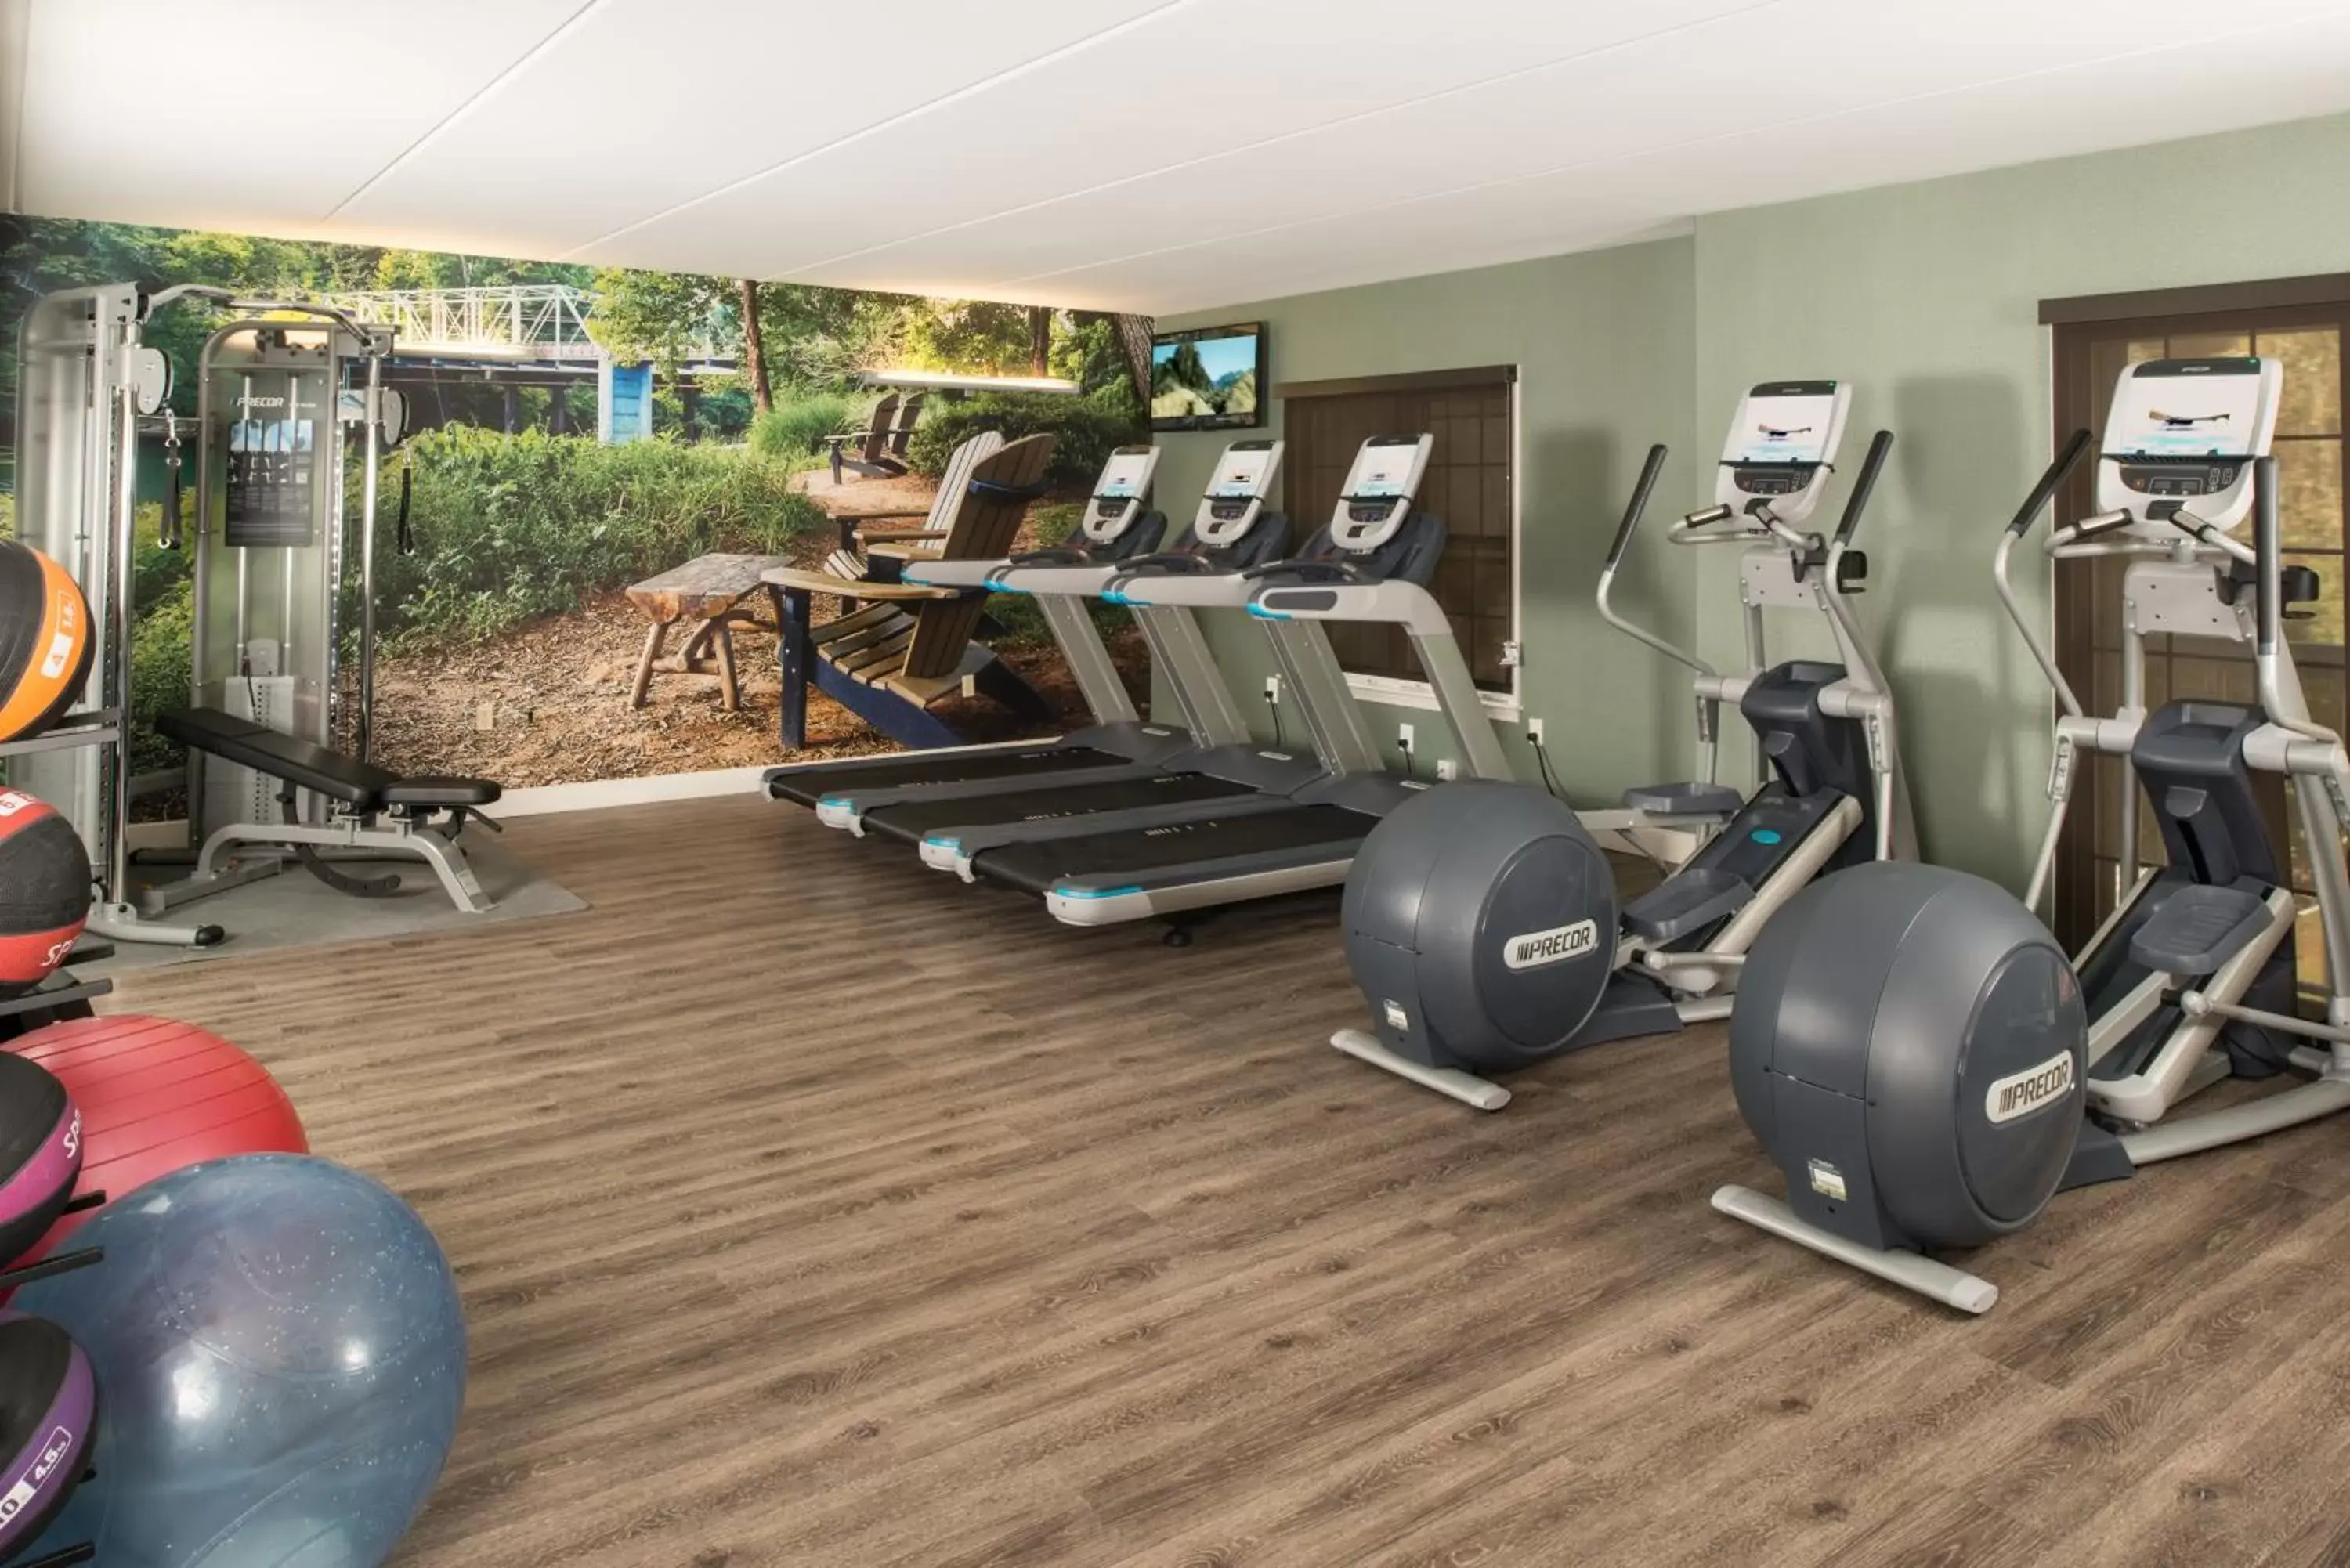 Fitness centre/facilities, Fitness Center/Facilities in Hotel Indigo Atlanta Vinings, an IHG Hotel